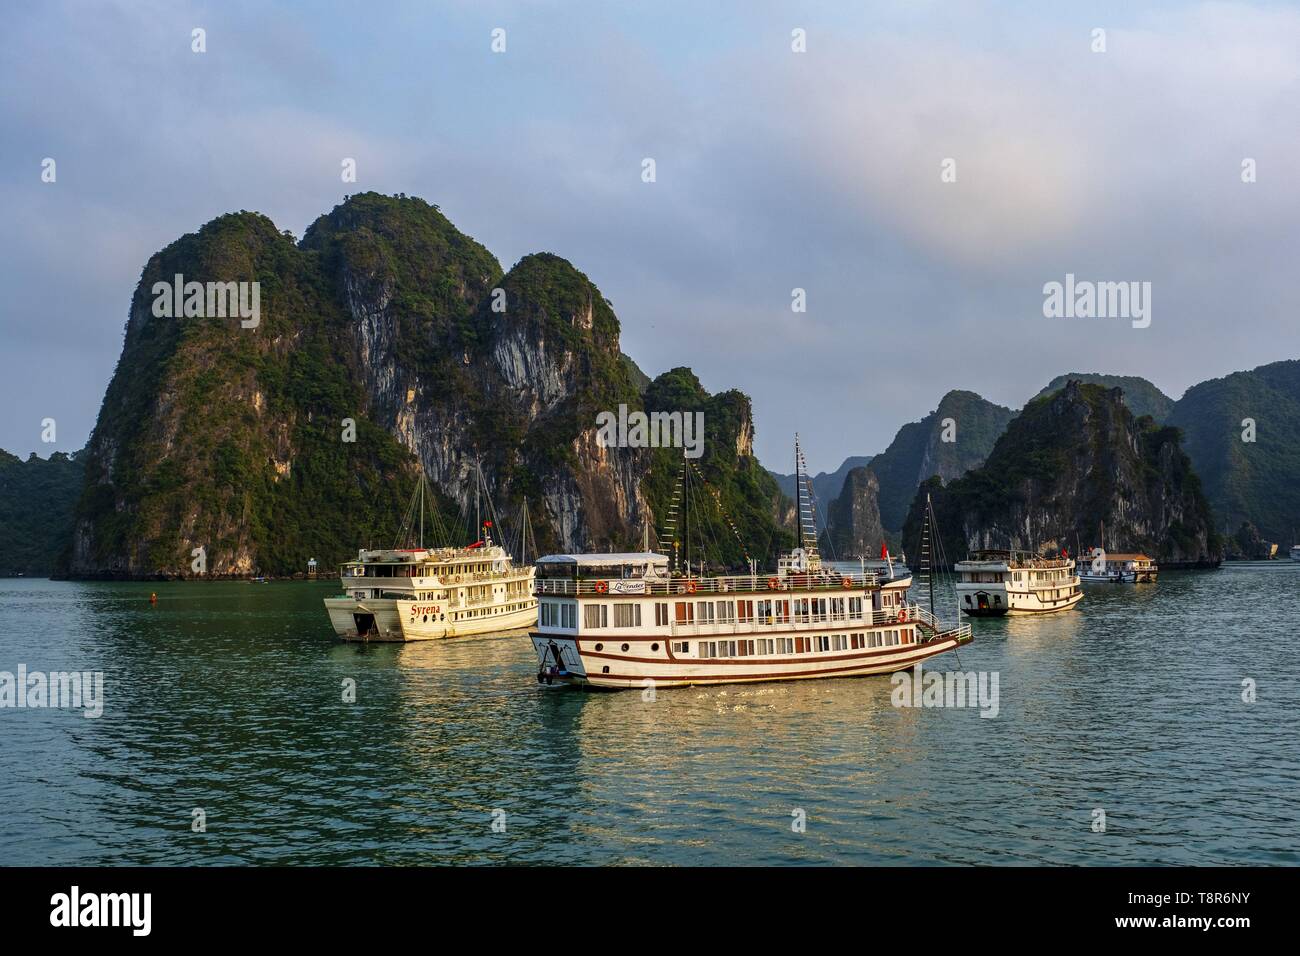 Il Vietnam, Golfo del Tonchino, Quang Ninh provincia, la baia di Ha Long (Vinh Ha Long) elencati come patrimonio mondiale dall' UNESCO (1994), iconico paesaggio del Carso landforms, navi da crociera Foto Stock